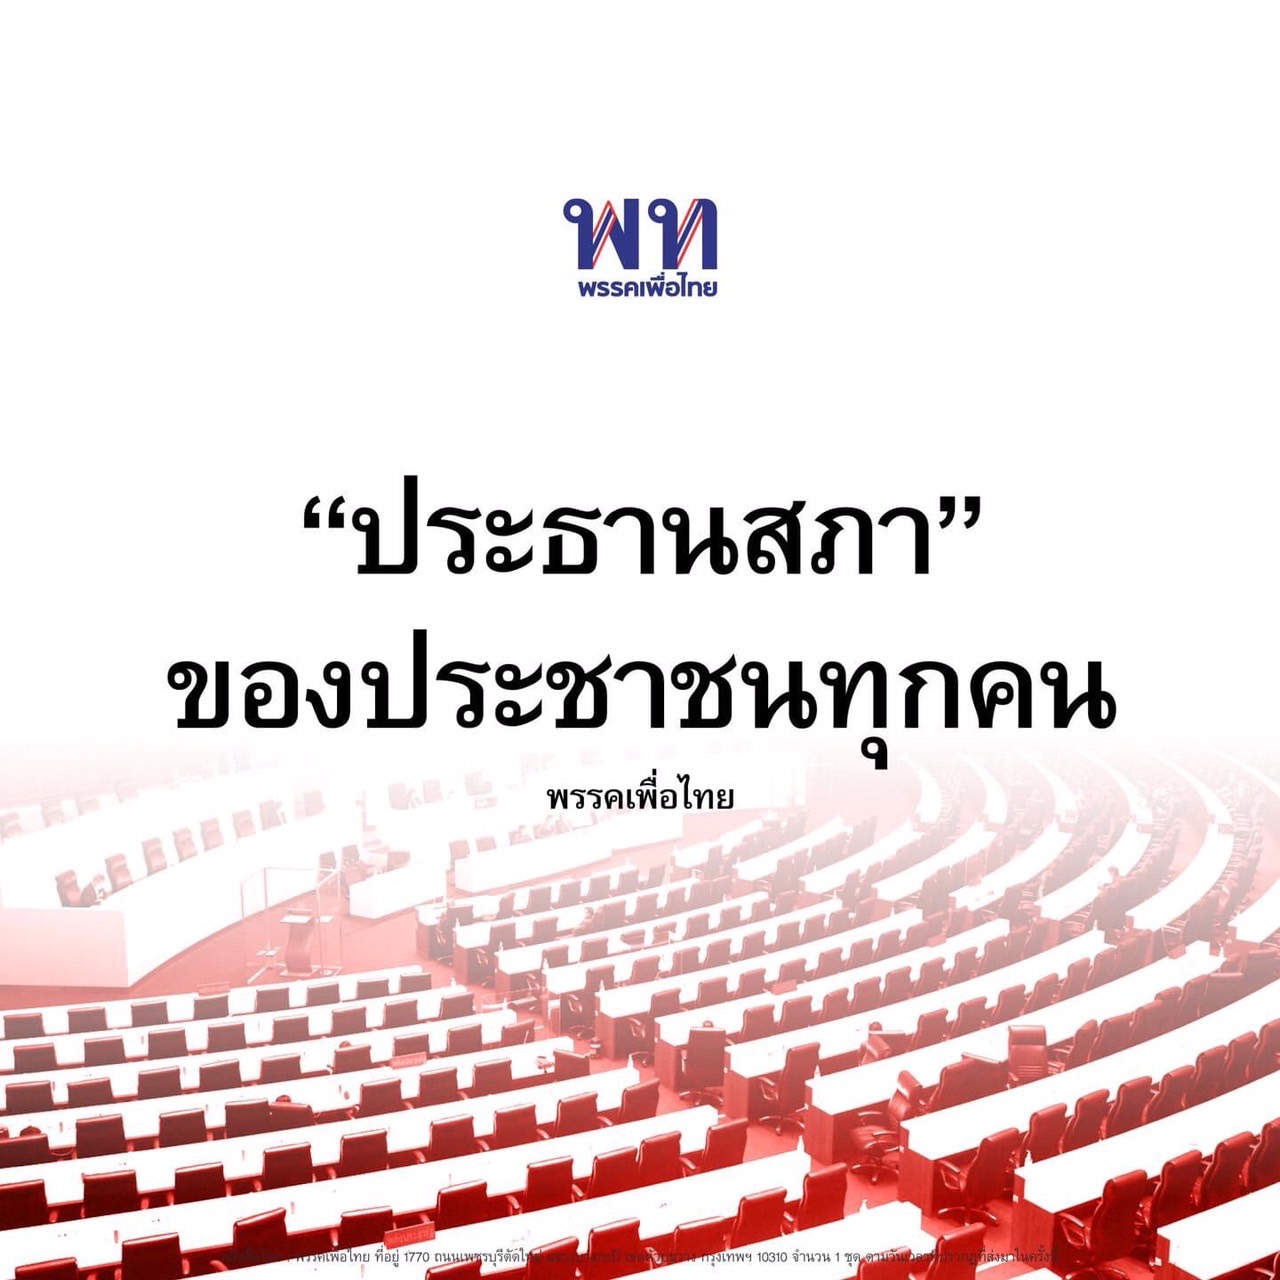 ‘เพื่อไทย’ เอาคืน ‘ก้าวไกล’ ประธานสภาฯ ต้องเป็นกลาง ไม่ใช่ผลักดันวาระ แค่นโยบายพรรคตัวเอง  